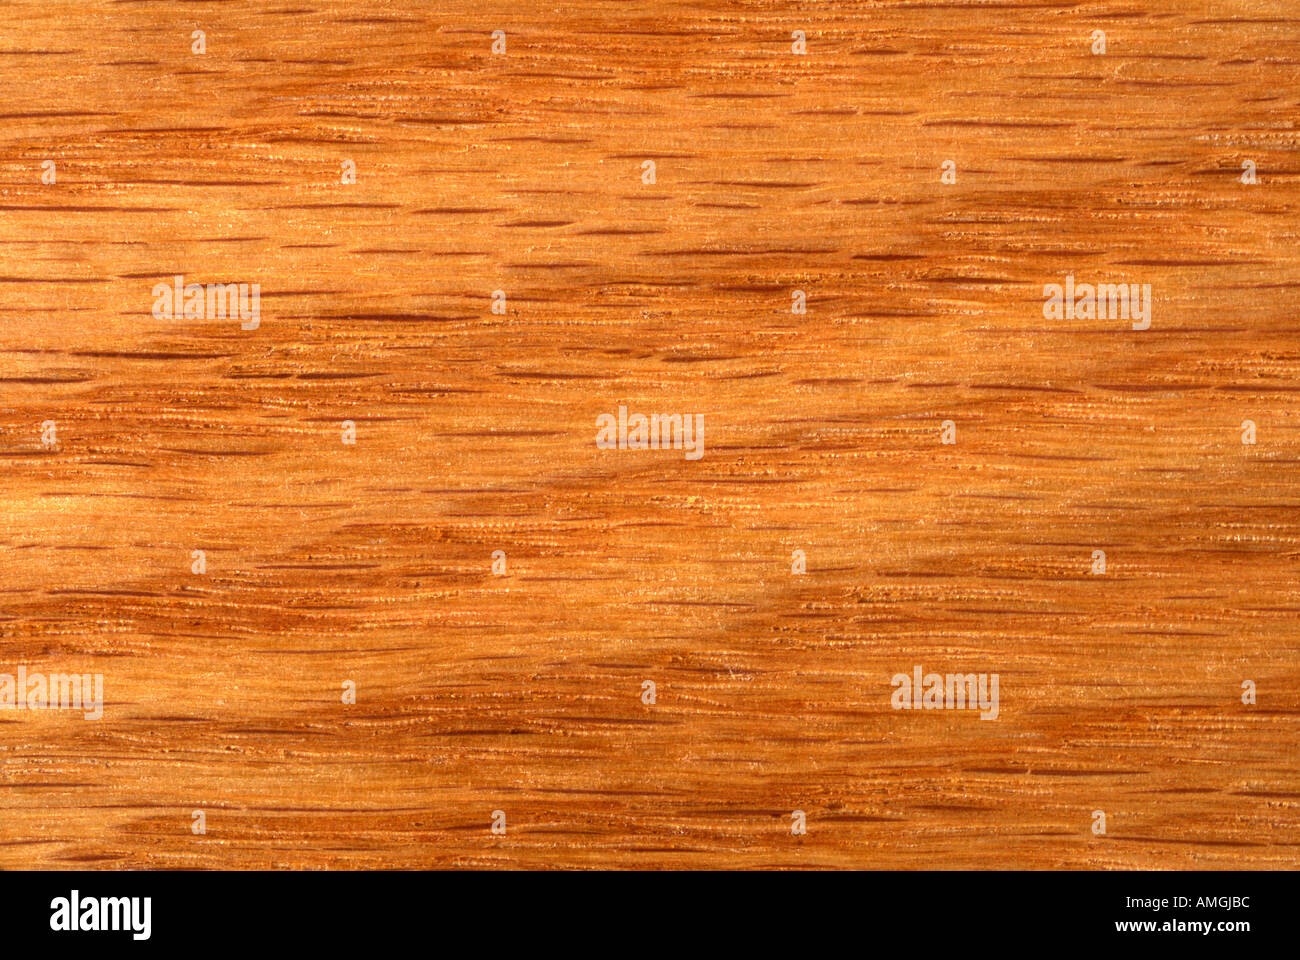 Oak wood grain pattern close up Stock Photo